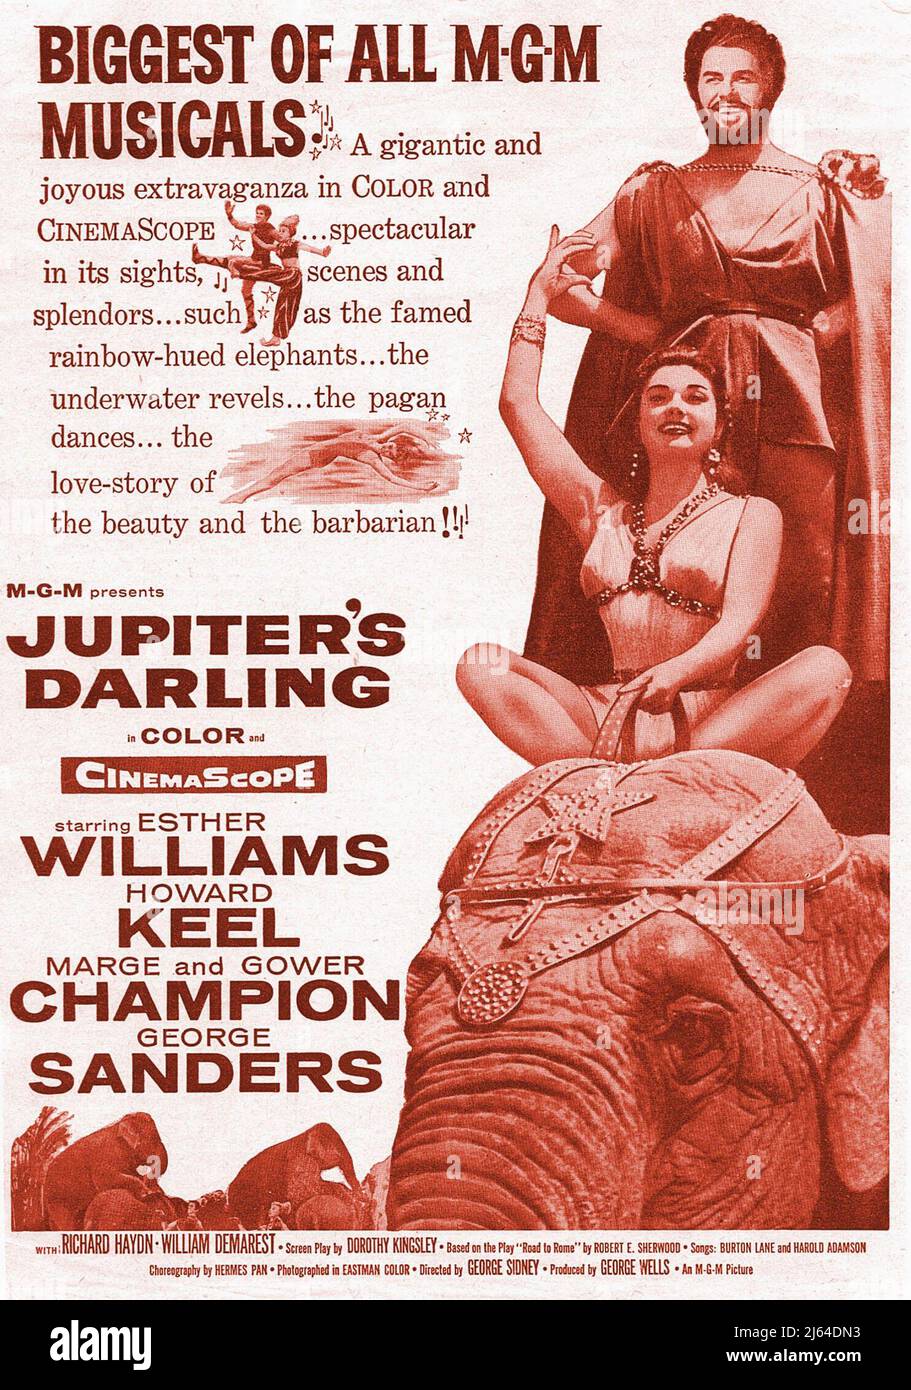 ESTHER WILLIAMS, AFFICHE DU CHAMPION GOWER, JUPITER'S DARLING, 1955 Banque D'Images